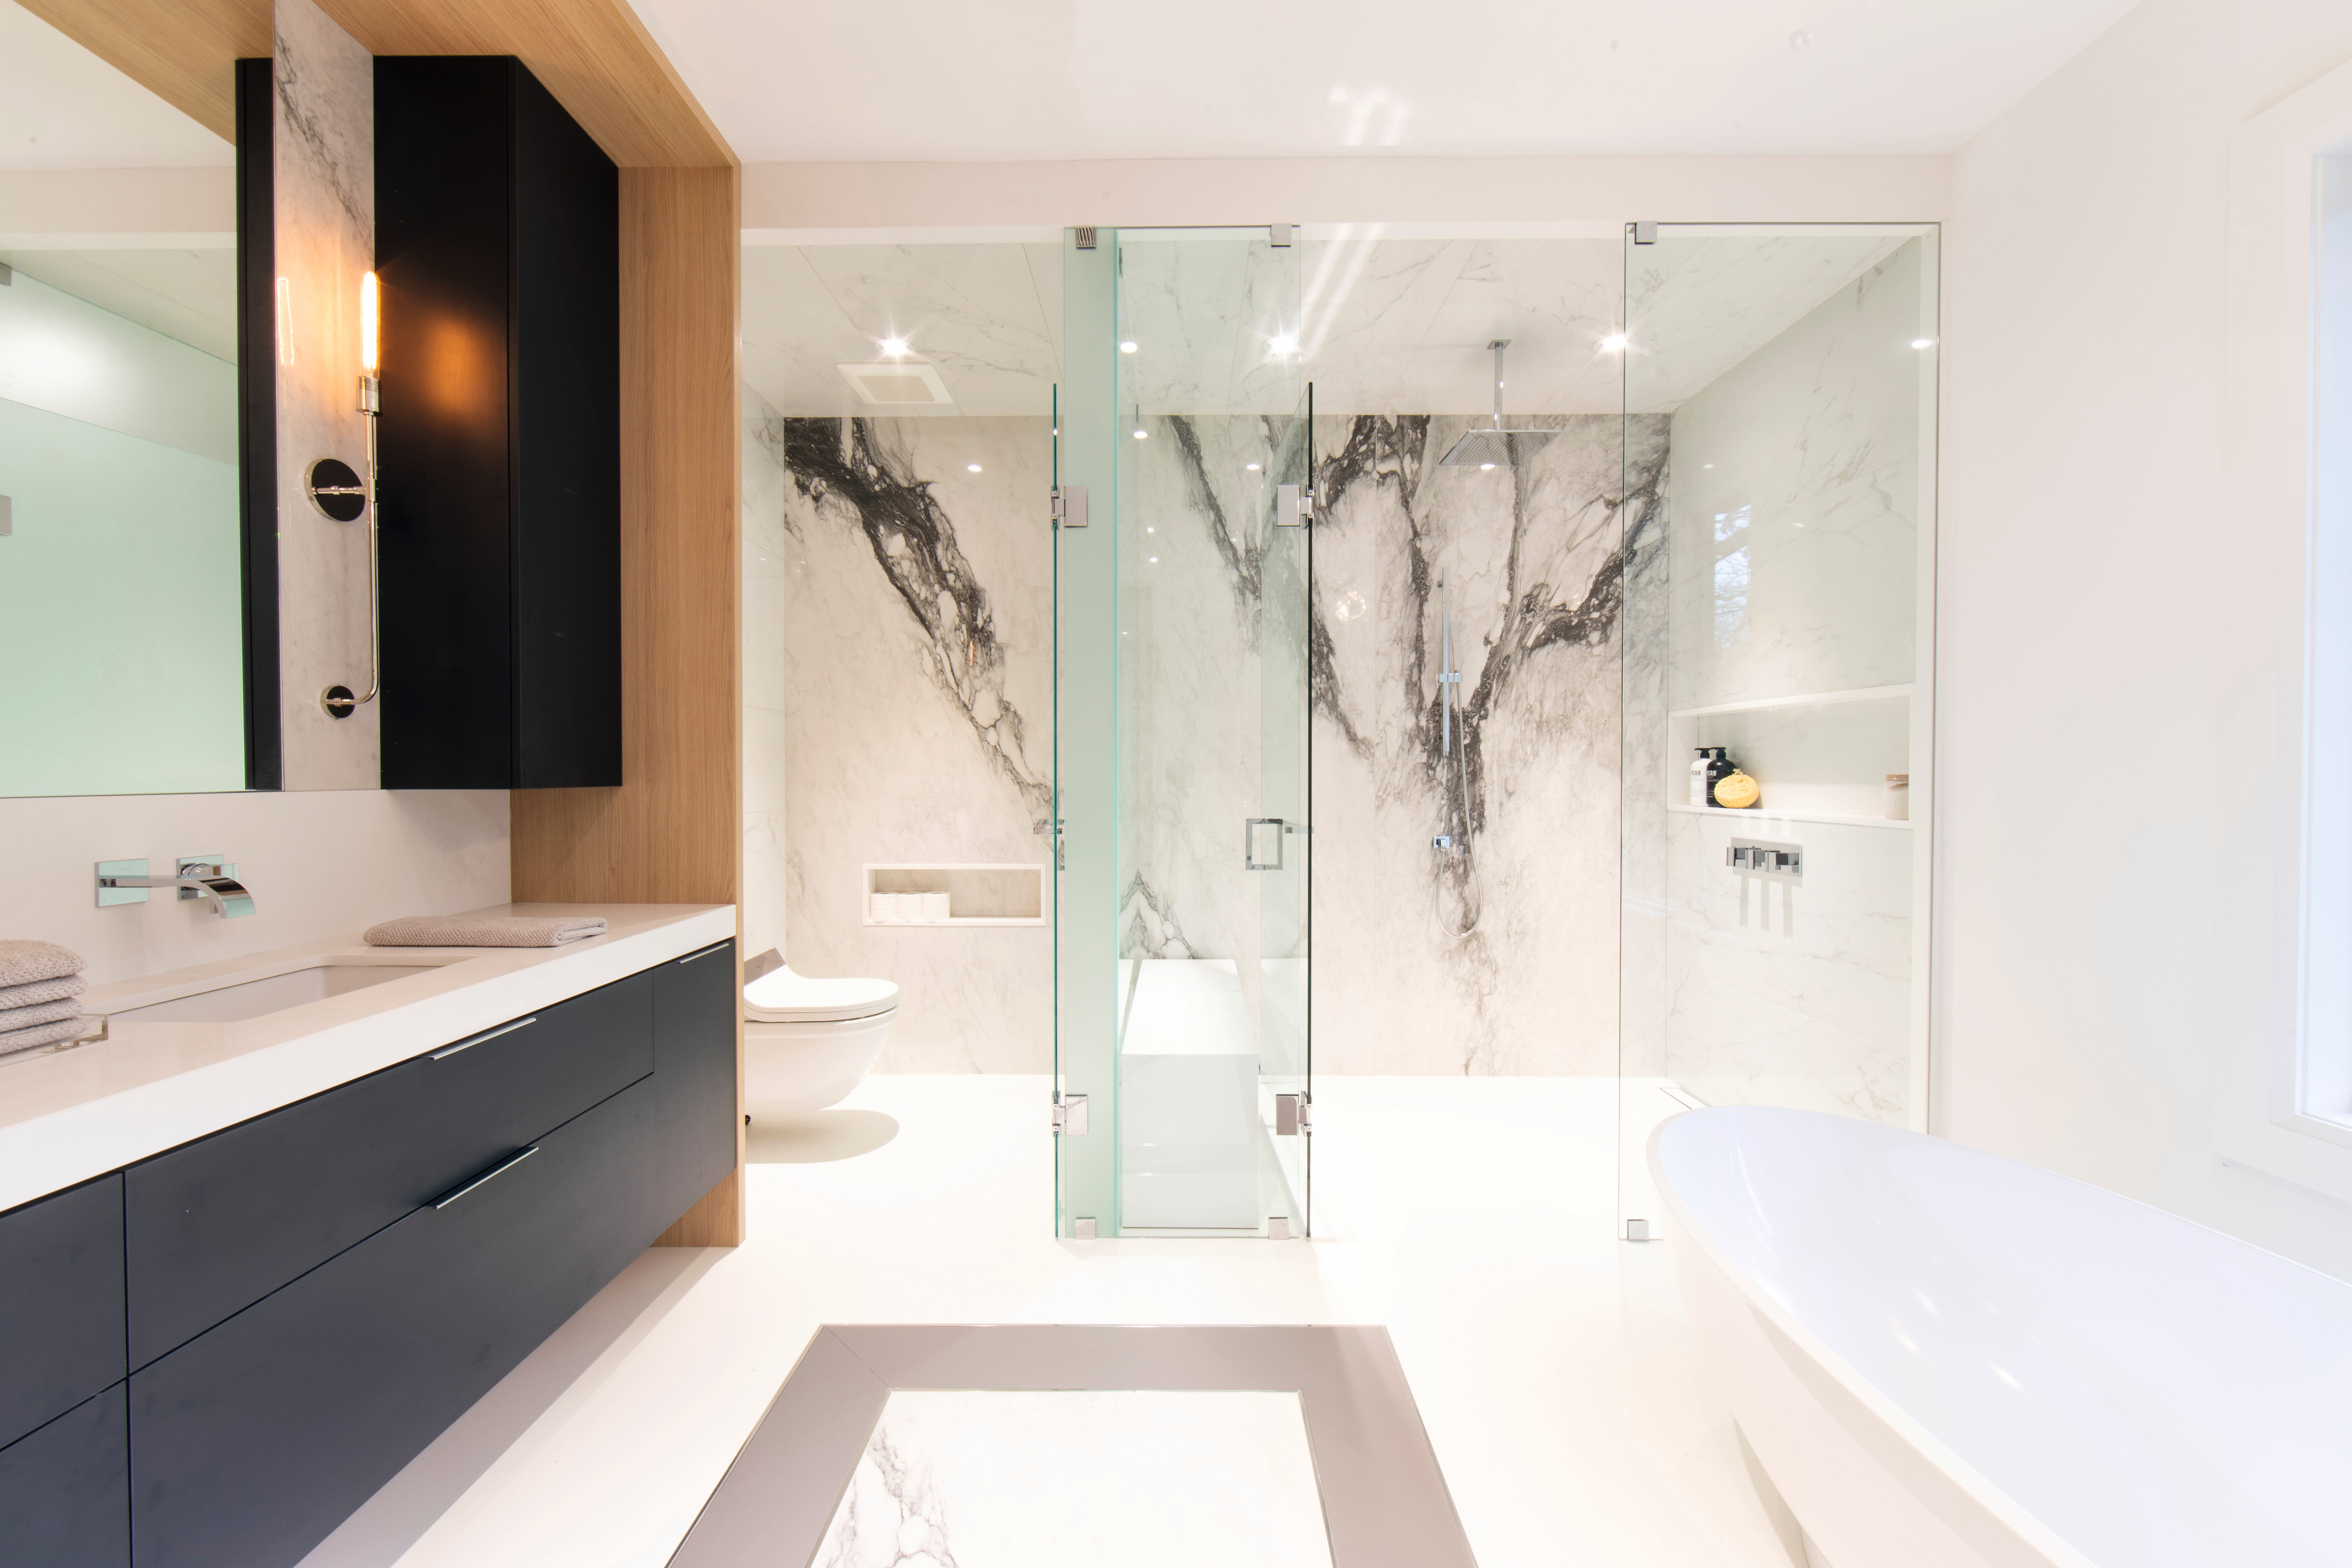 A természetes fa világos megjelenésével kombinált fekete hangsúlyok és az eleganciát sugárzó márvány üdítően friss légkört teremtenek a fürdőszobában.